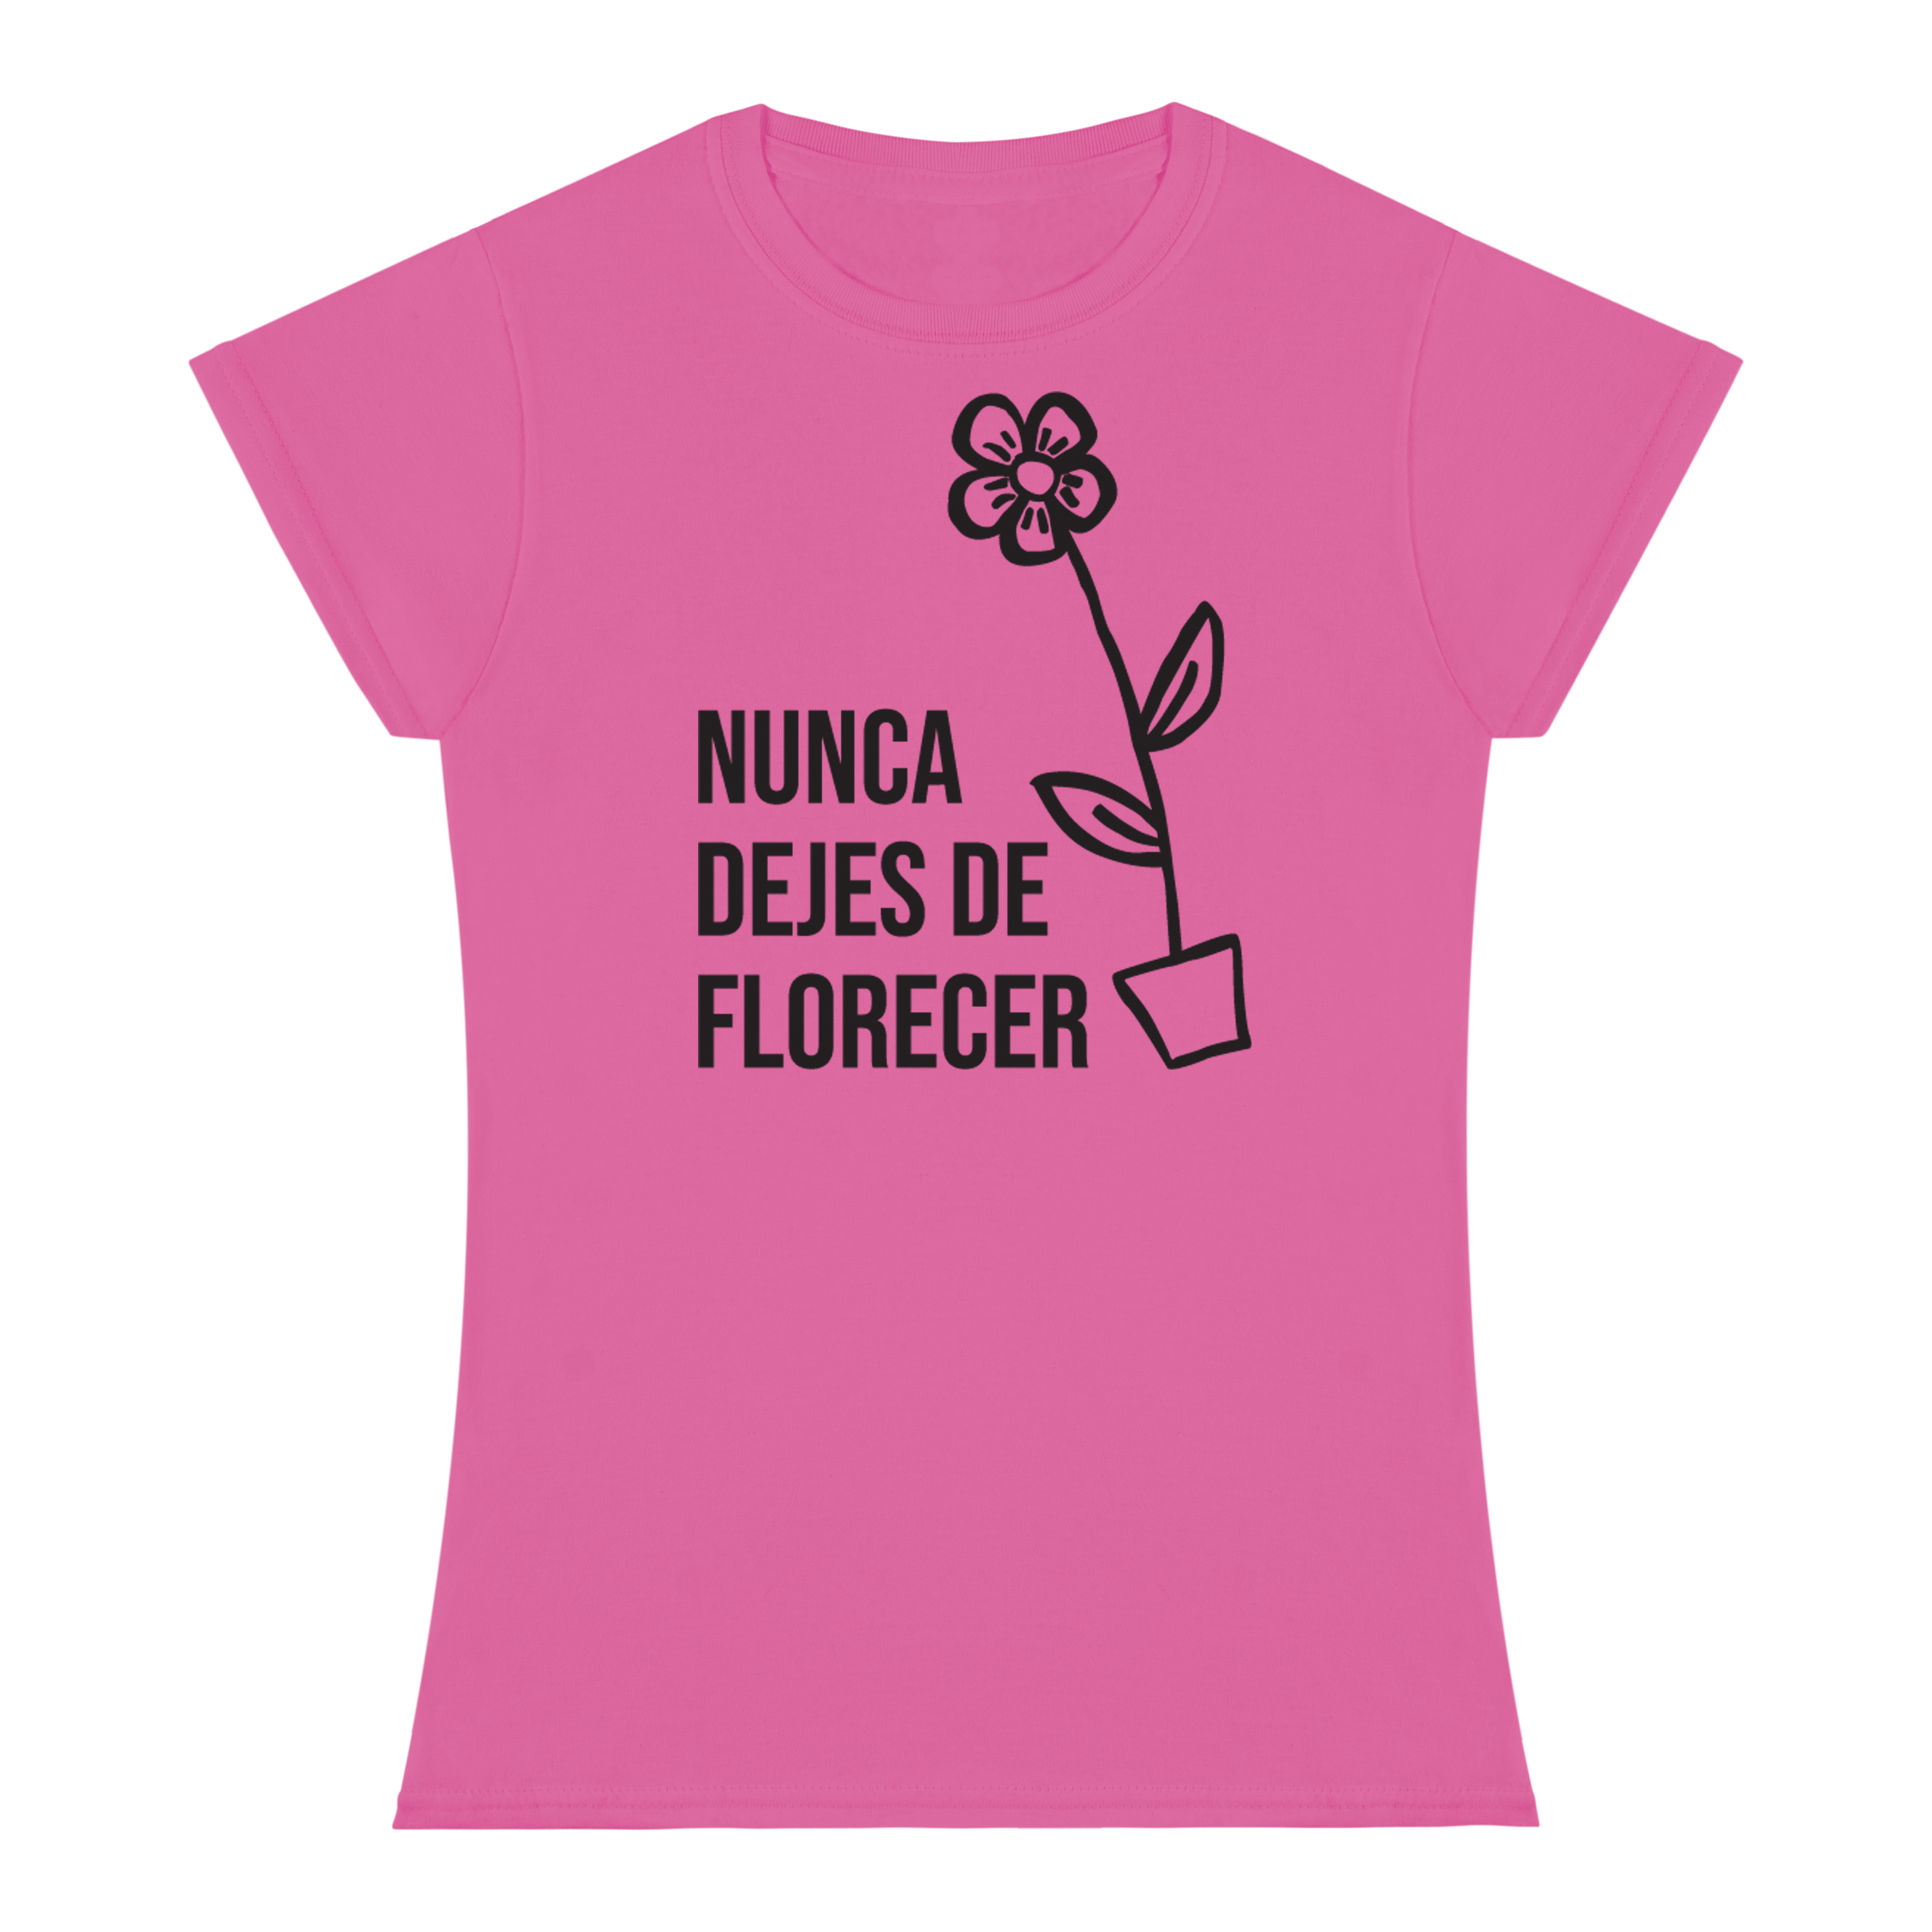 NUNCA DEJES DE FLORECER T-shirt